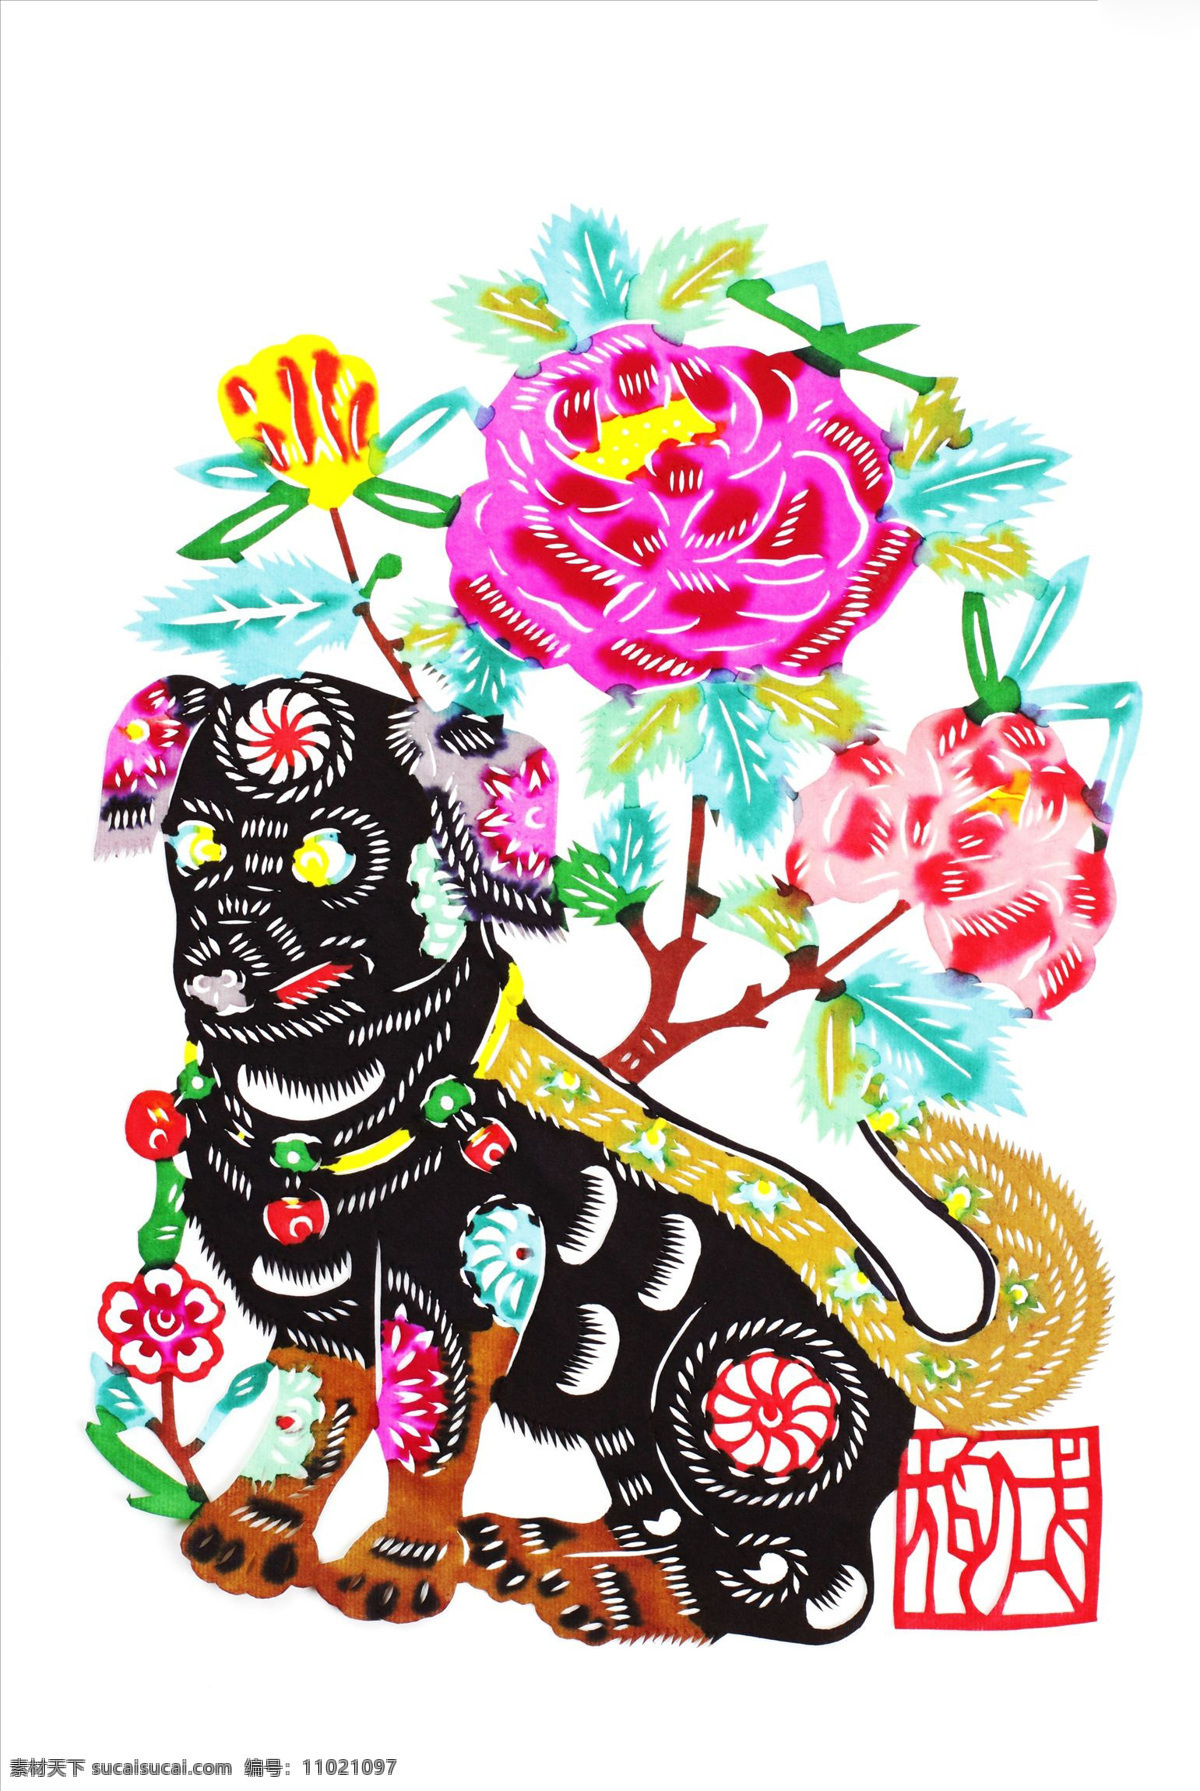 剪纸小狗 插图 动物 工艺品 狗 花 剪纸 可爱 美术 生肖 手艺 艺术 传统文化 文化艺术